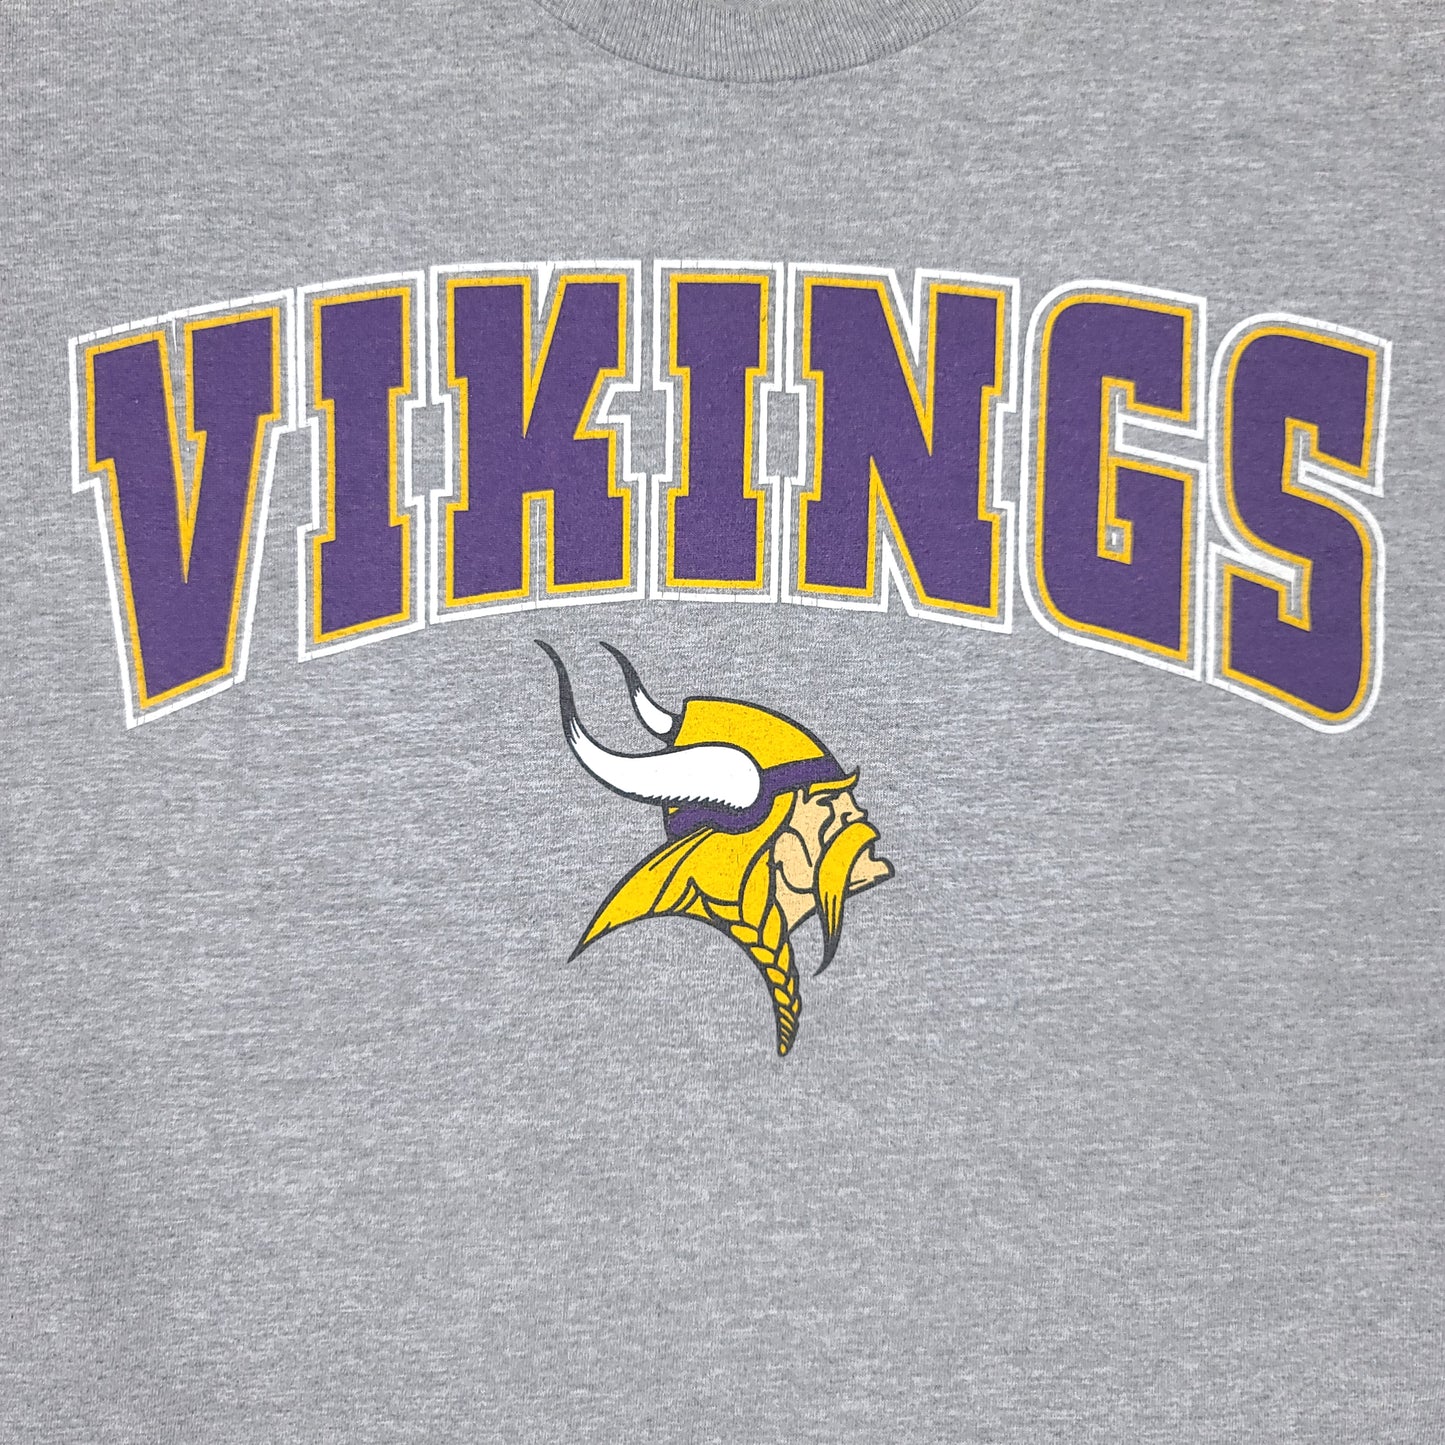 Vintage Minnesota Vikings Starter Gray Tee